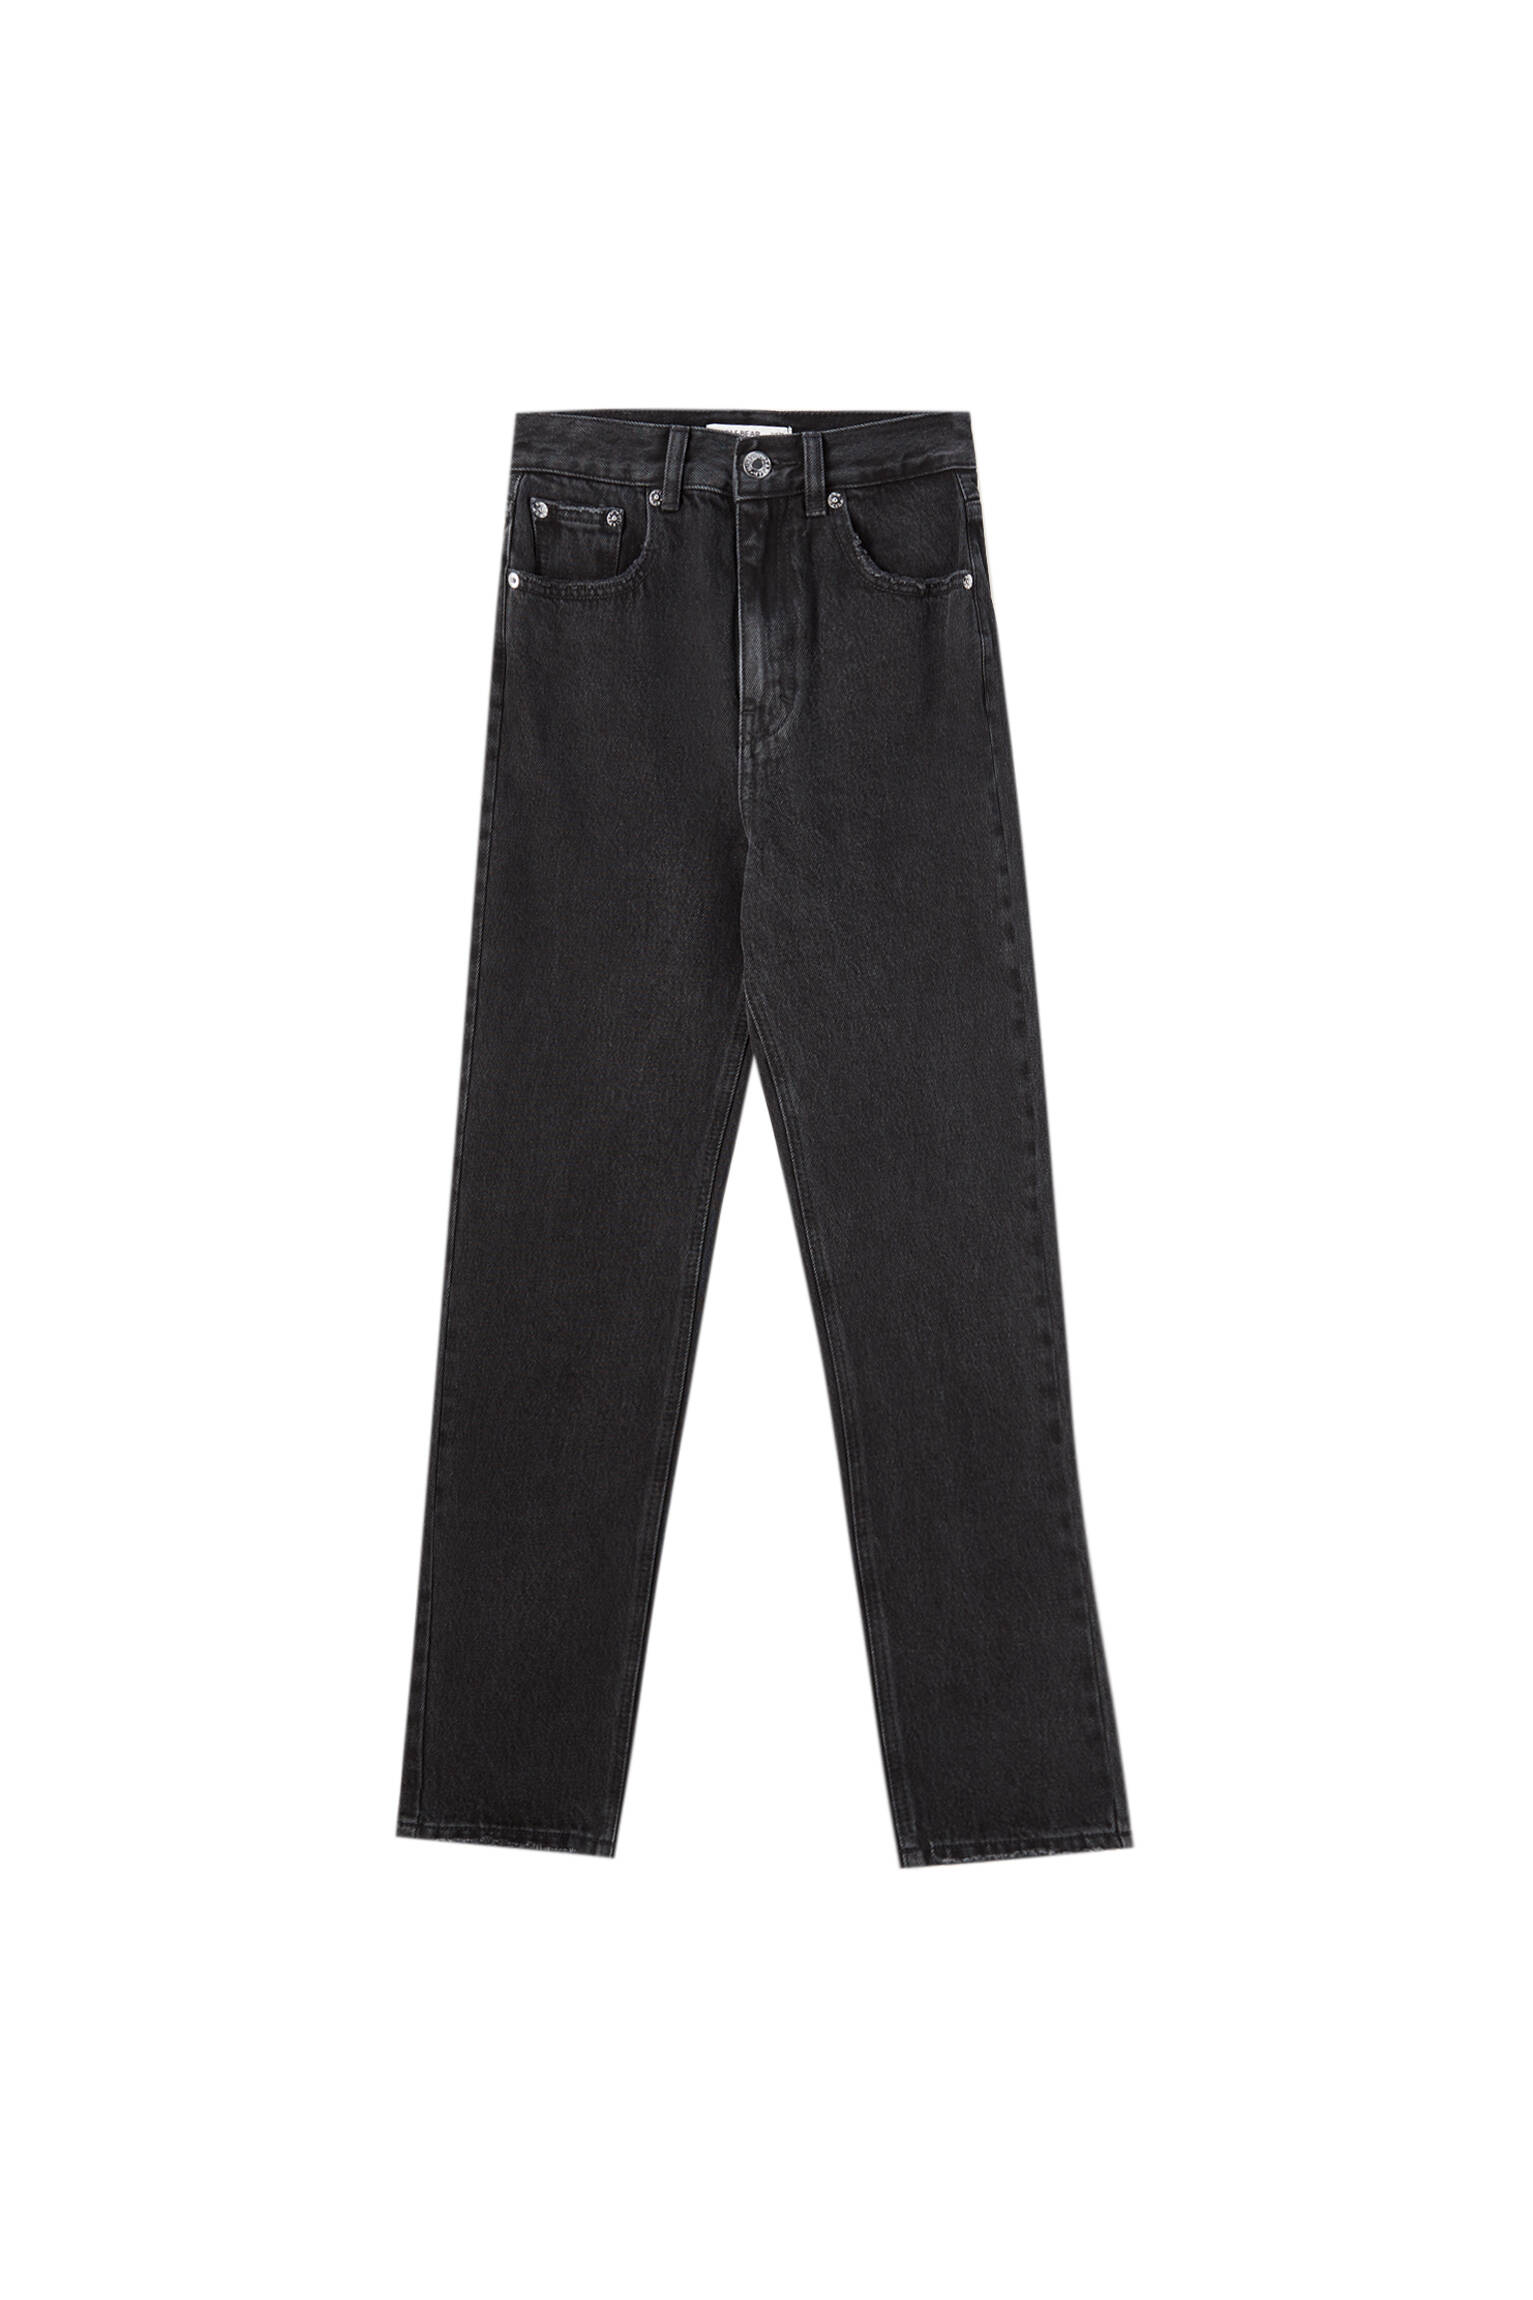 ЧЕРНЫЙ Базовые джинсы mom fit - органический хлопок (не менее 50%) Pull & Bear